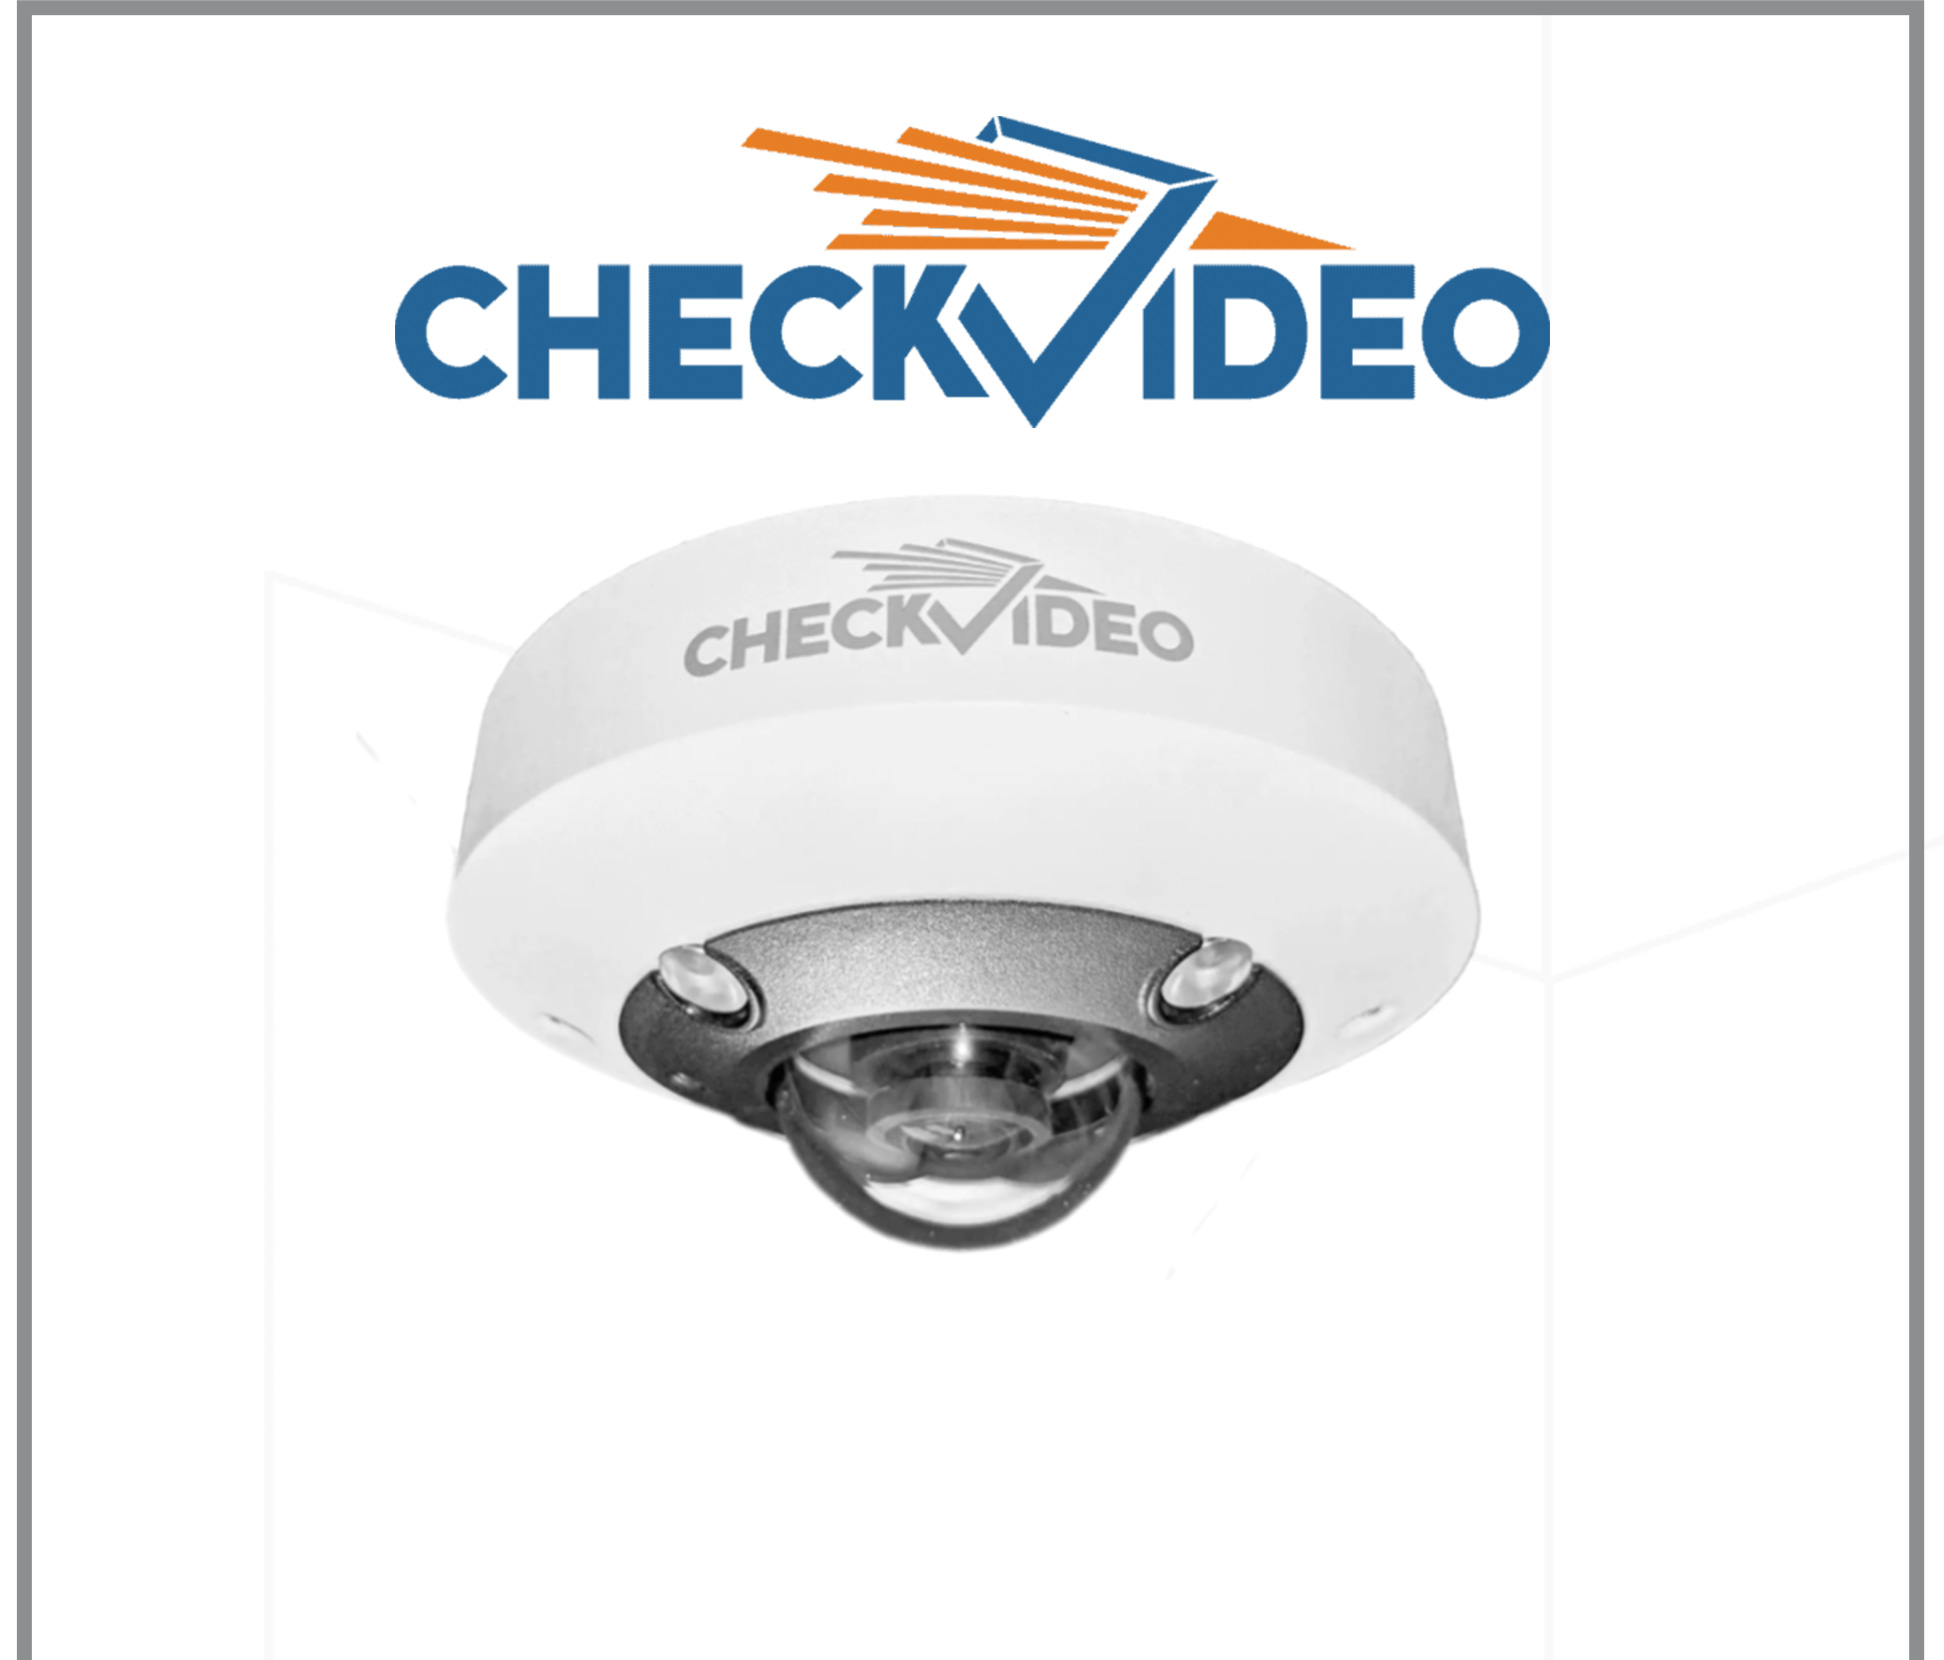 checkvideo logo above security camera